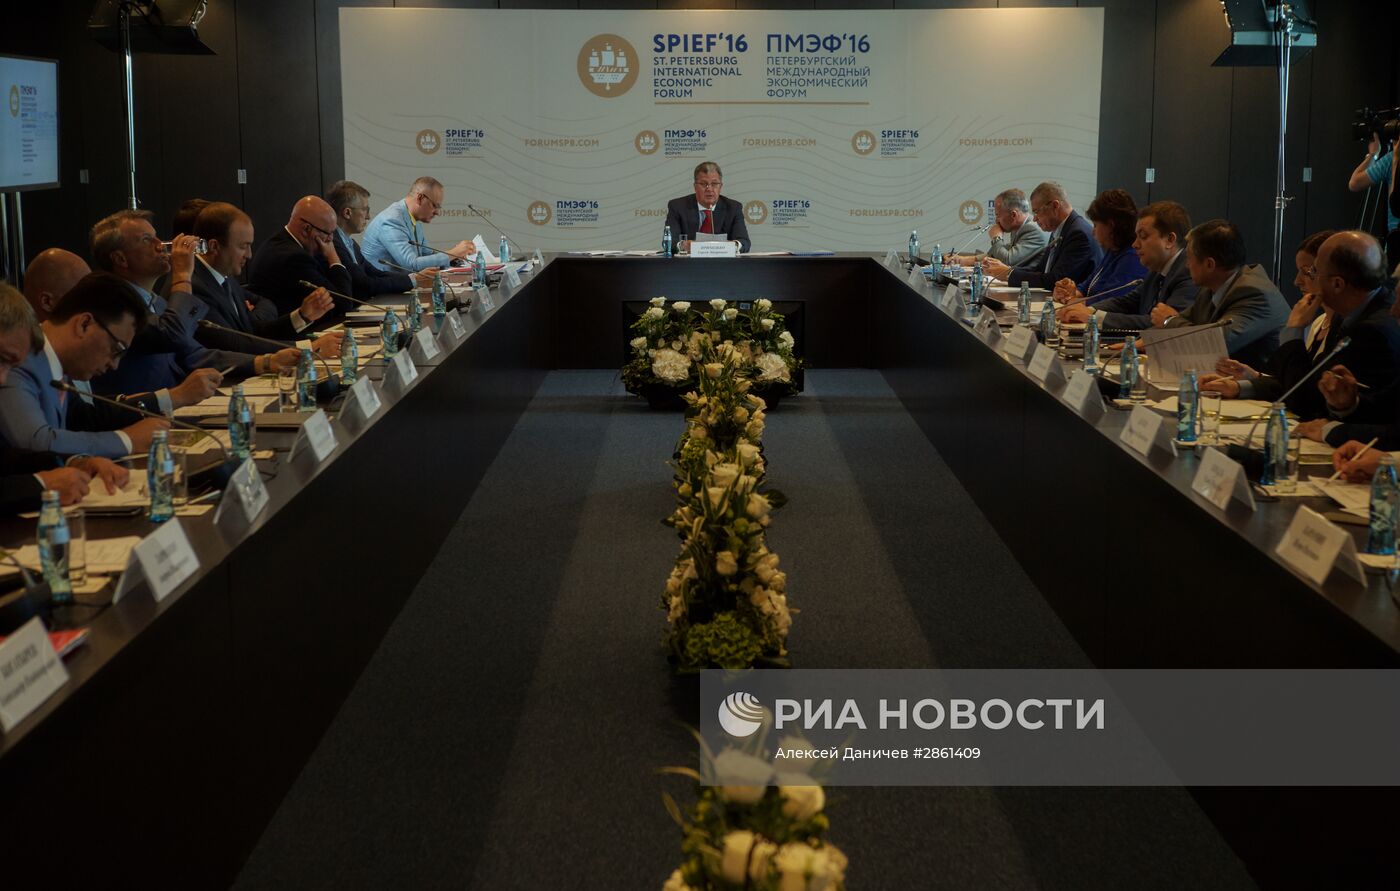 Подготовка к проведению Петербургского экономического форума